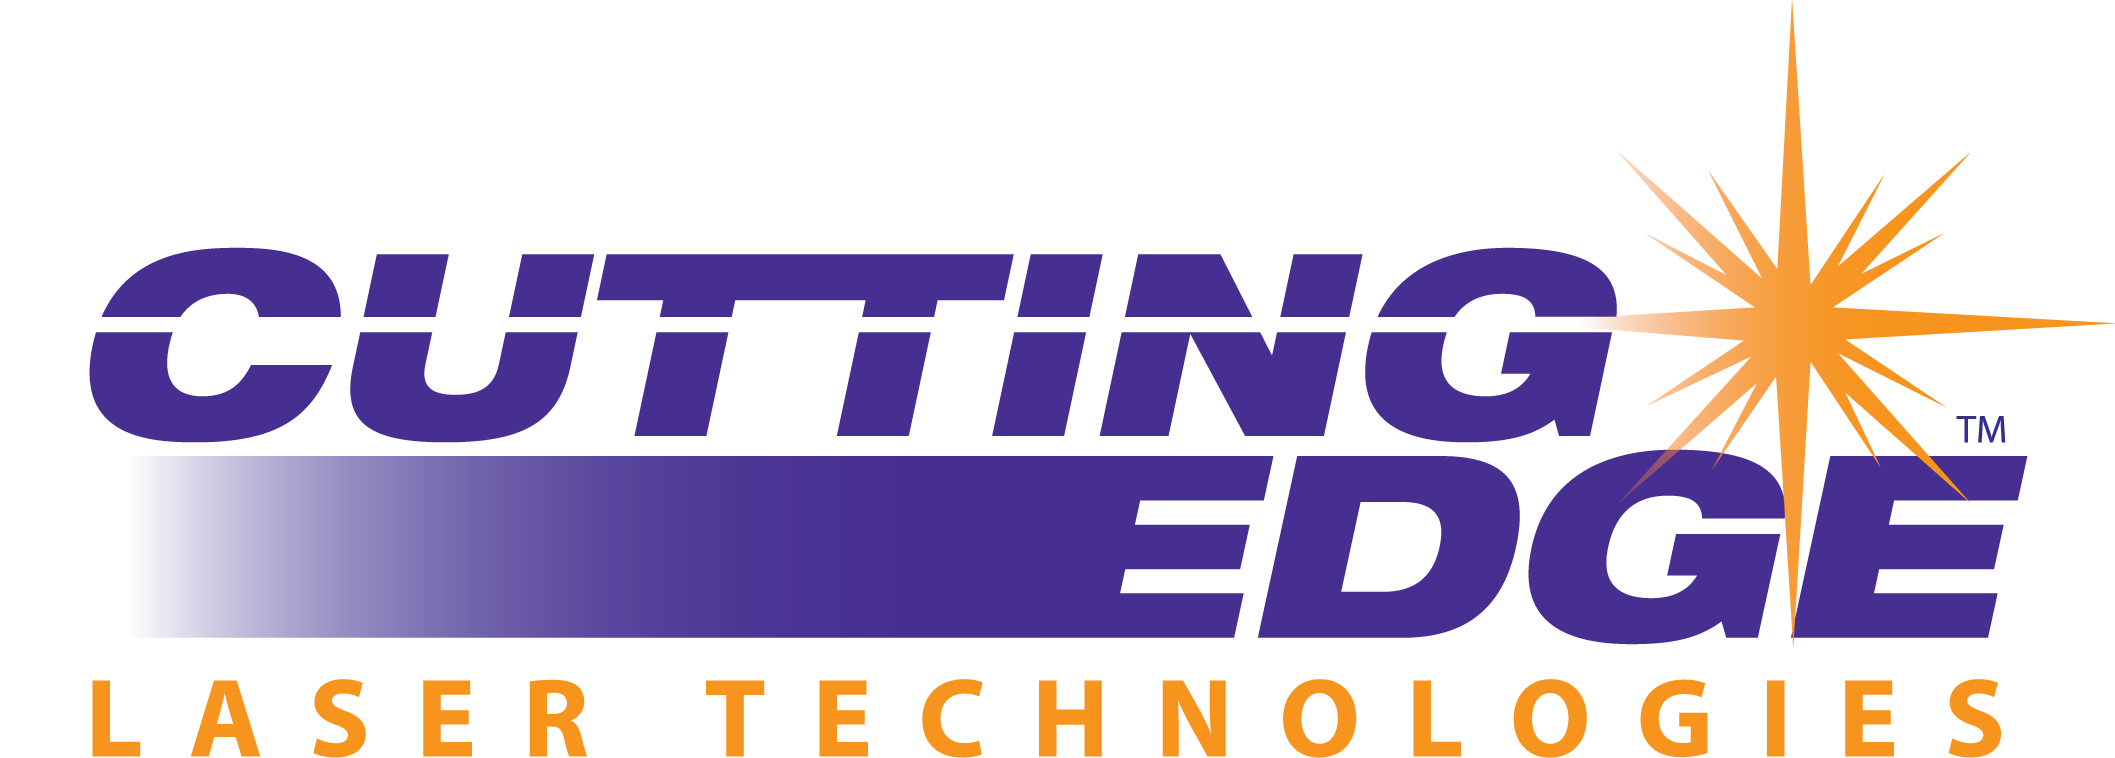 2016 CE Logo Vector 90 100 0 0